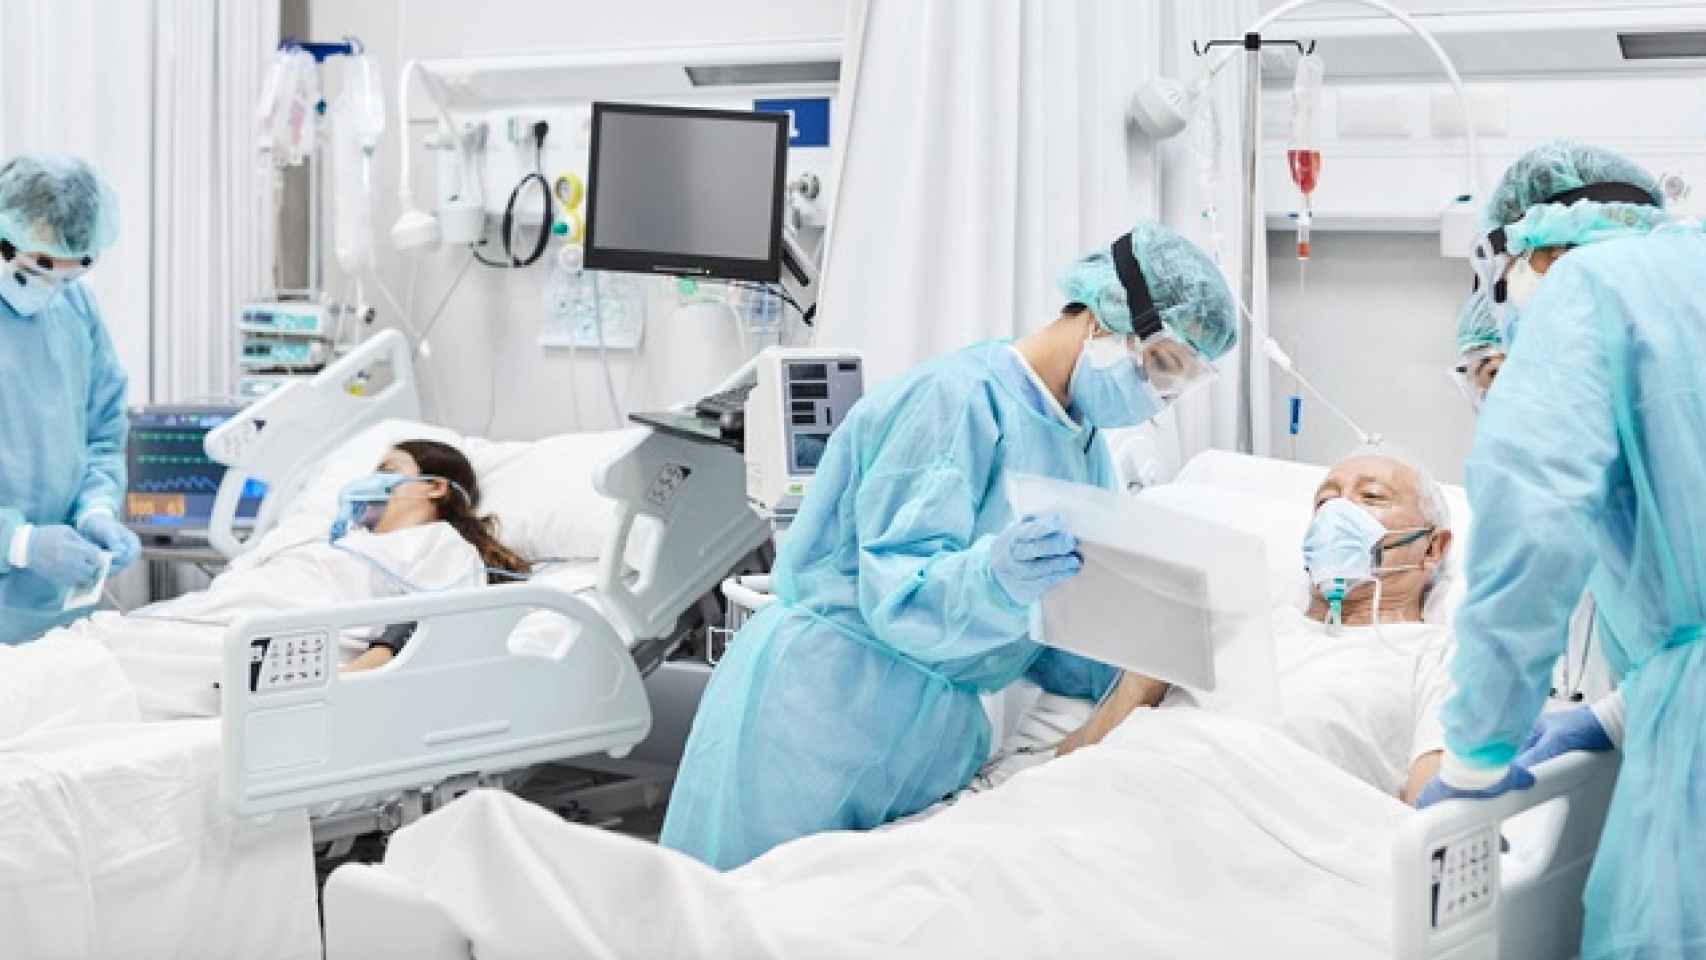 Enfermeros atiendan a pacientes durante la pandemia / EUROPAPRESS